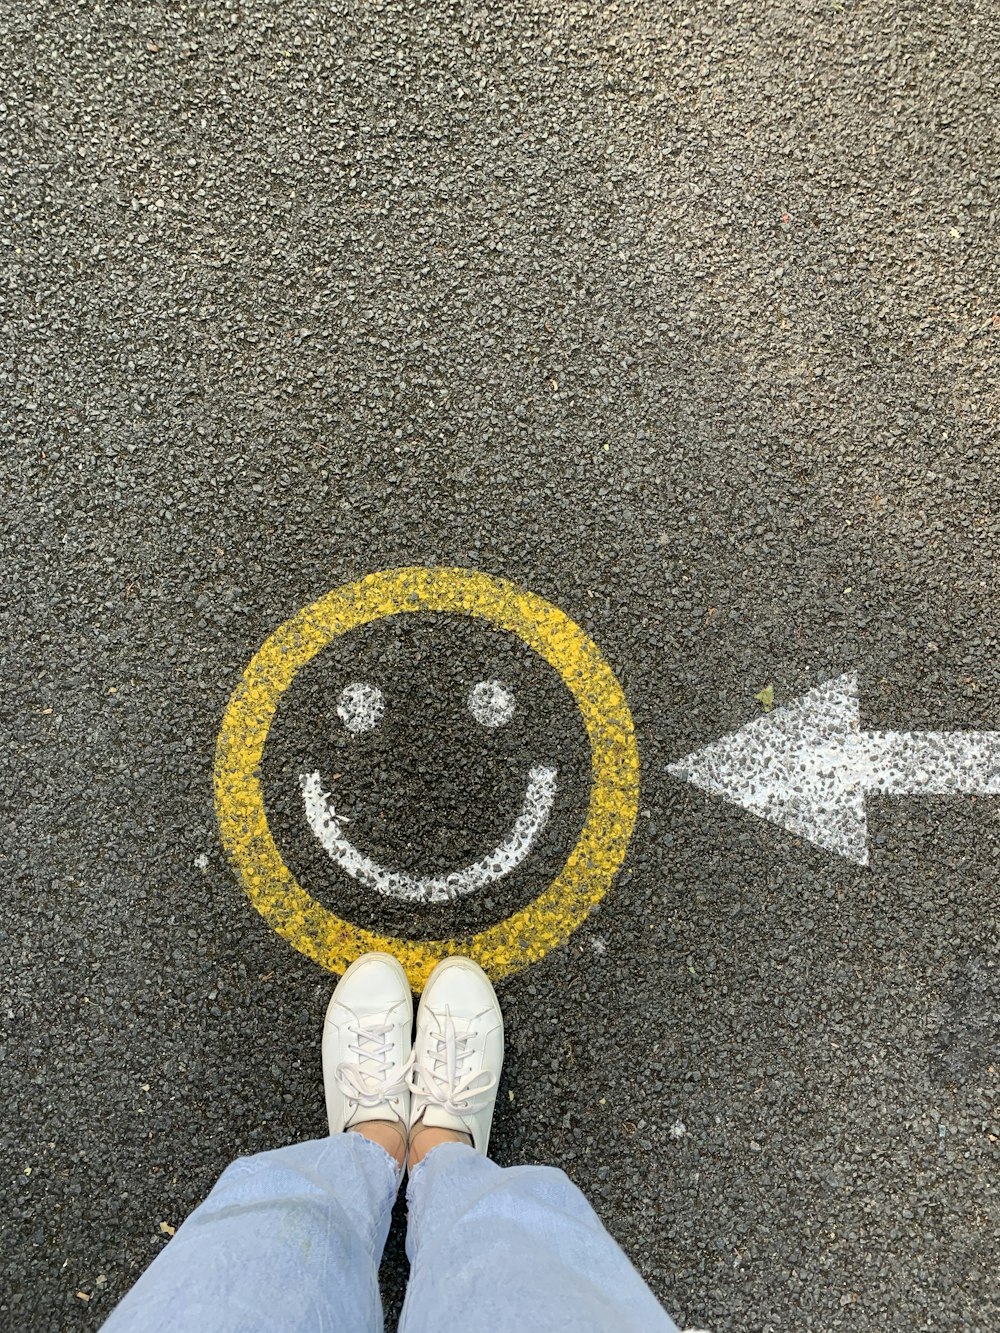 Smile Emoji Pictures | Download Free Images on Unsplash